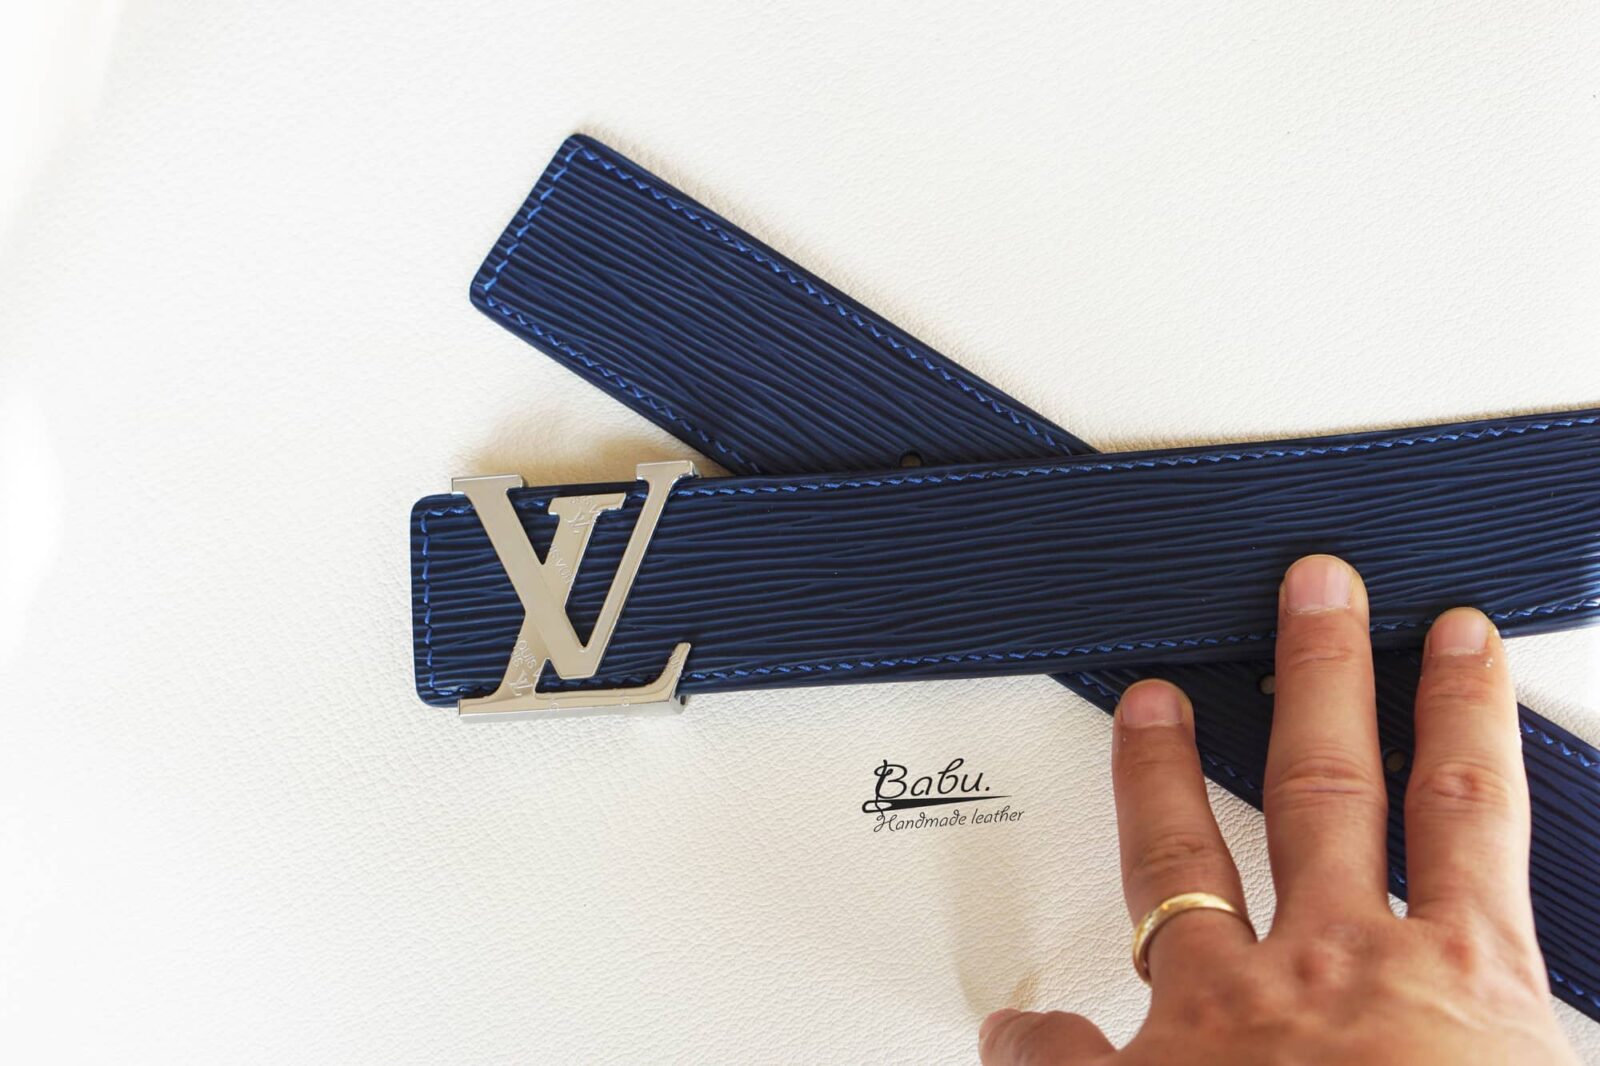 Handmade Navy Blue Epsom Leather Belt LB060